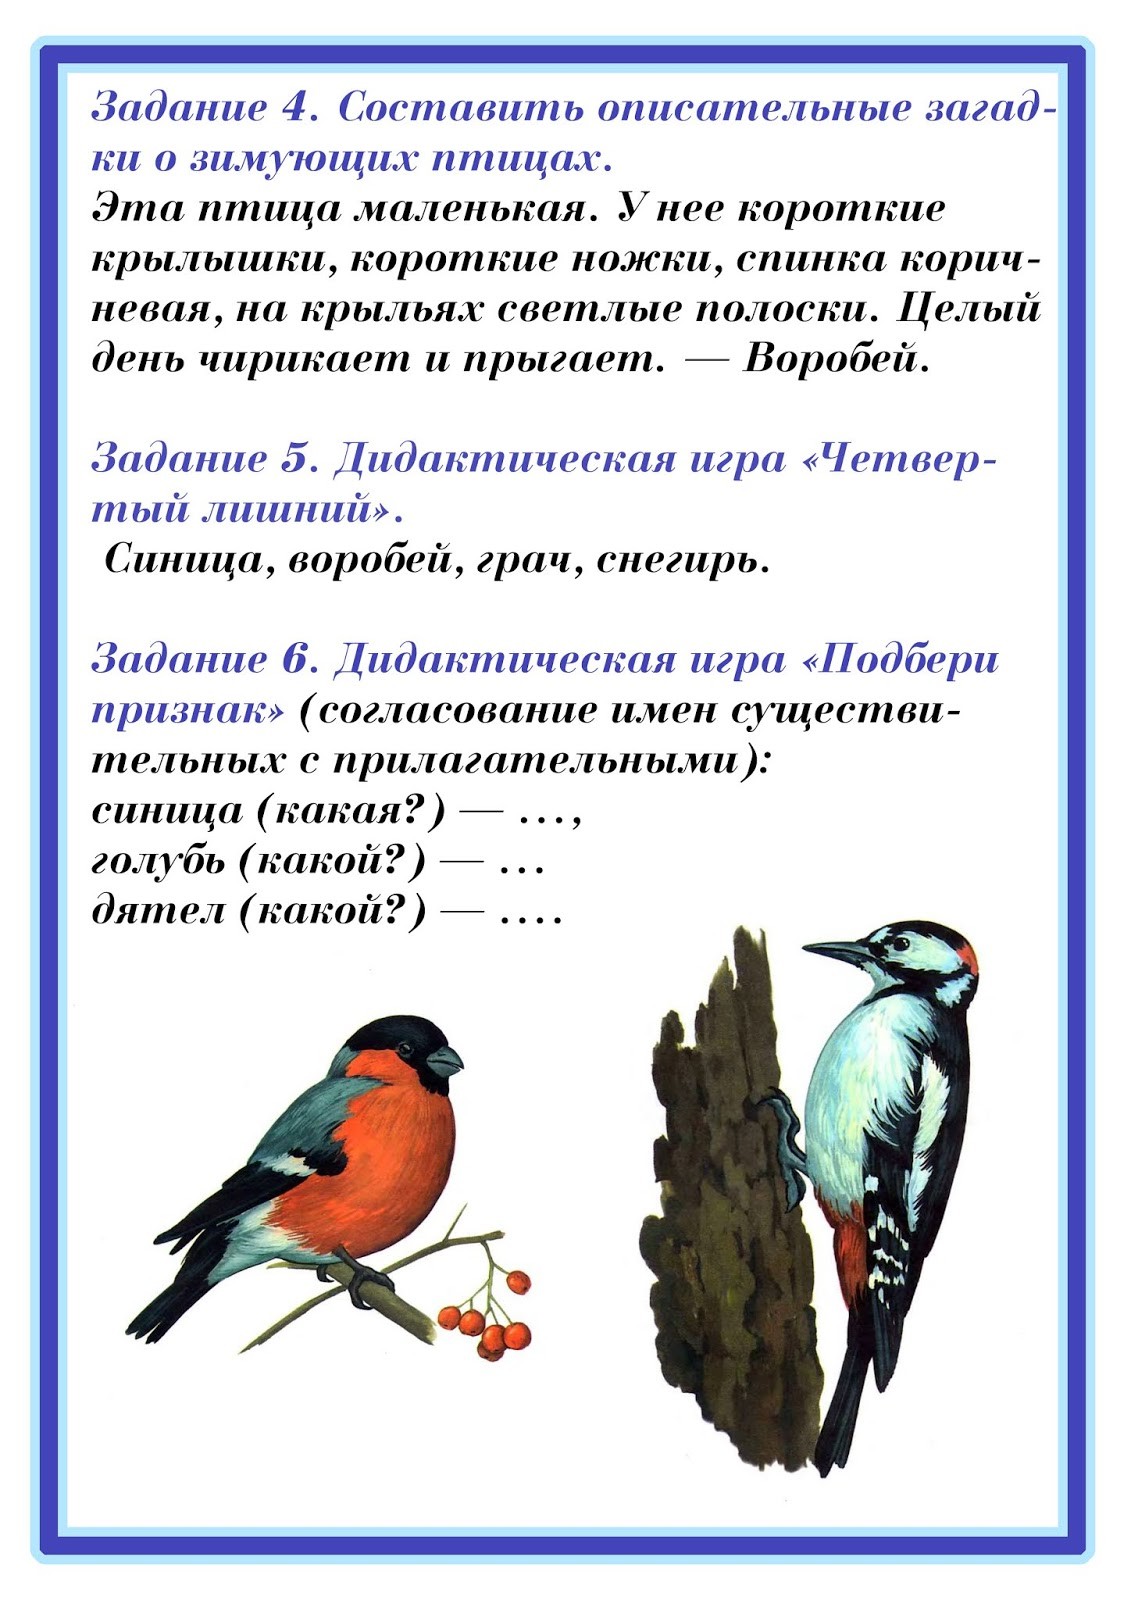 Найди в тексте описание красивых чудесных птиц нарисуй словесную картину